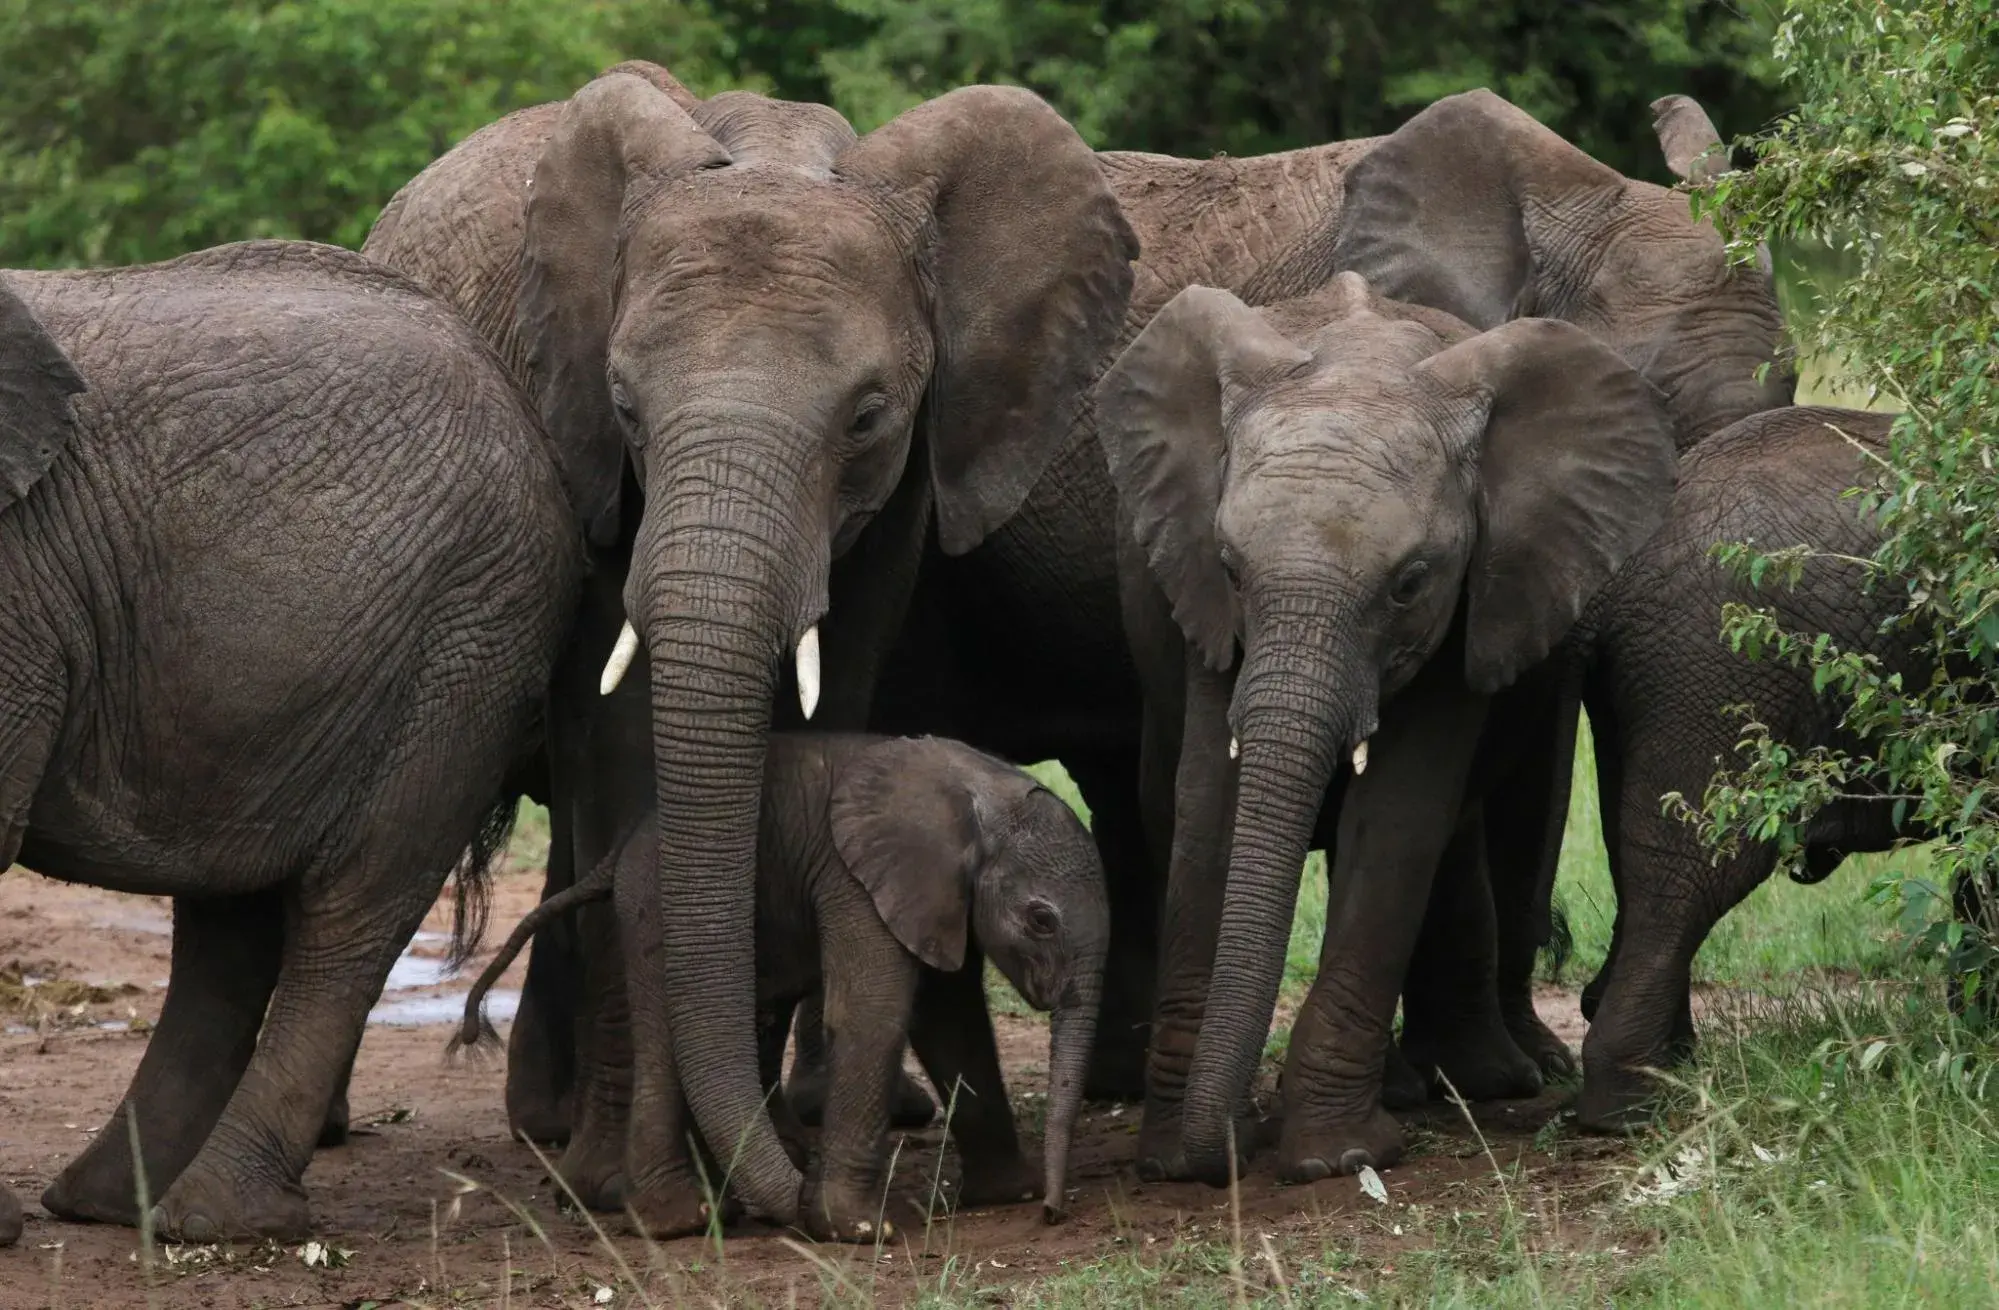 KenyaLuxurySafari.co.uk - Elephants